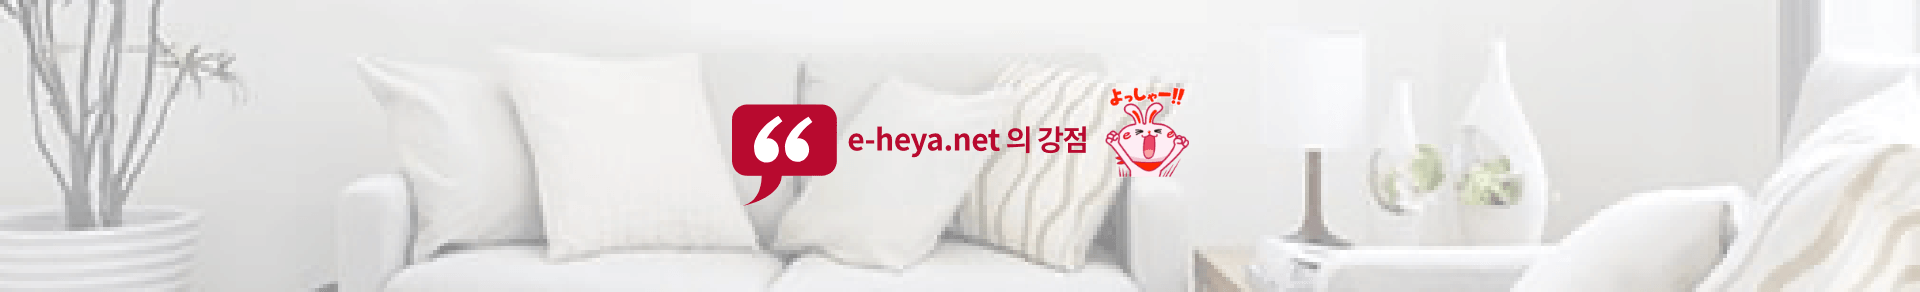 e-heya.net 의 강점